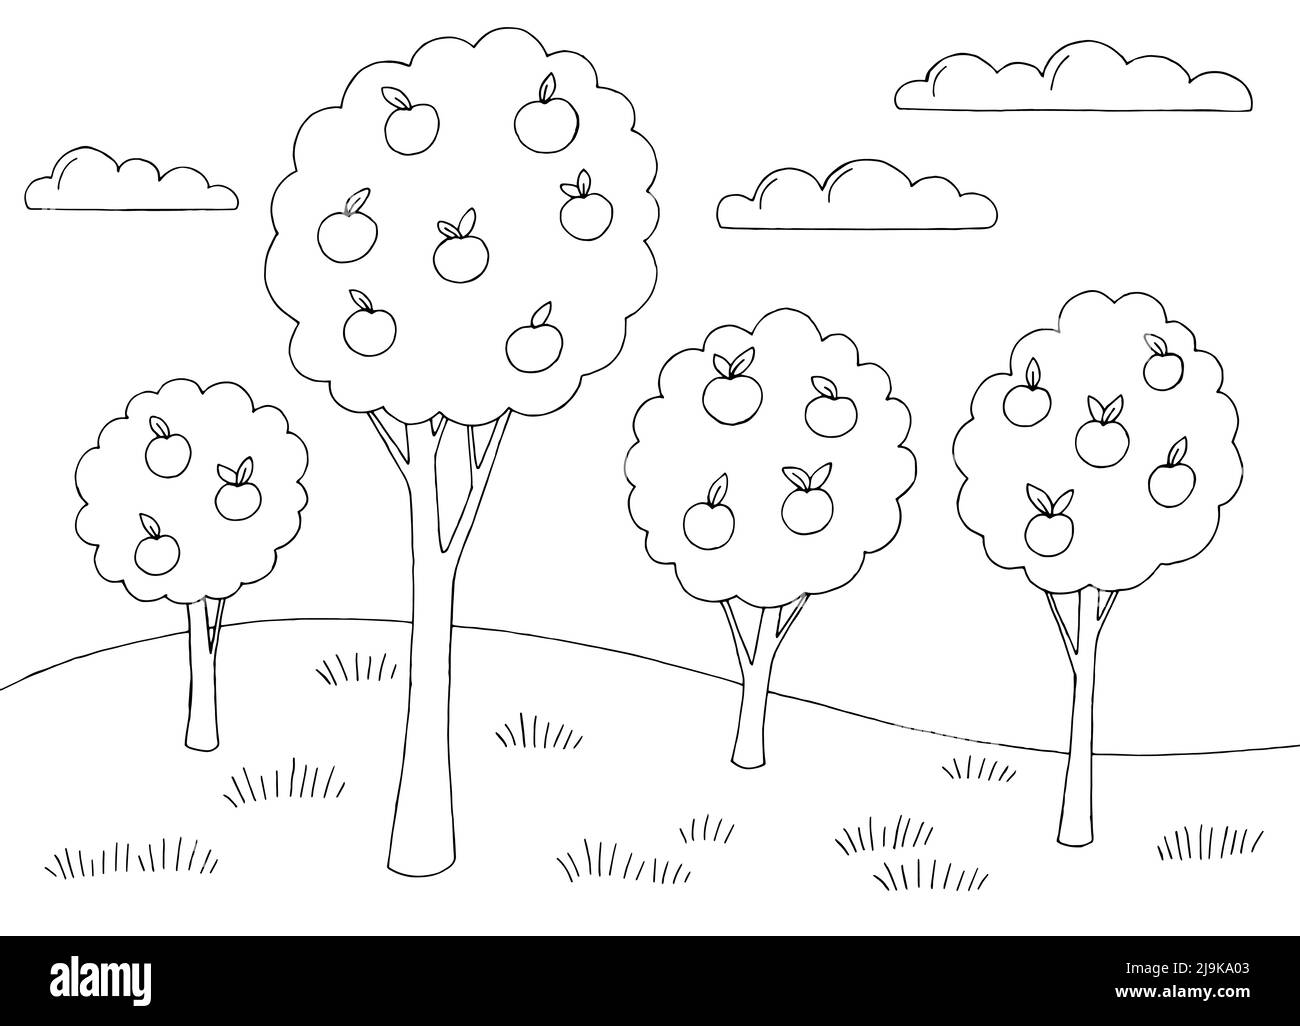 Apple Garten Einfachheit Grafik schwarz weiß Landschaft Skizze Illustration Vektor Stock Vektor